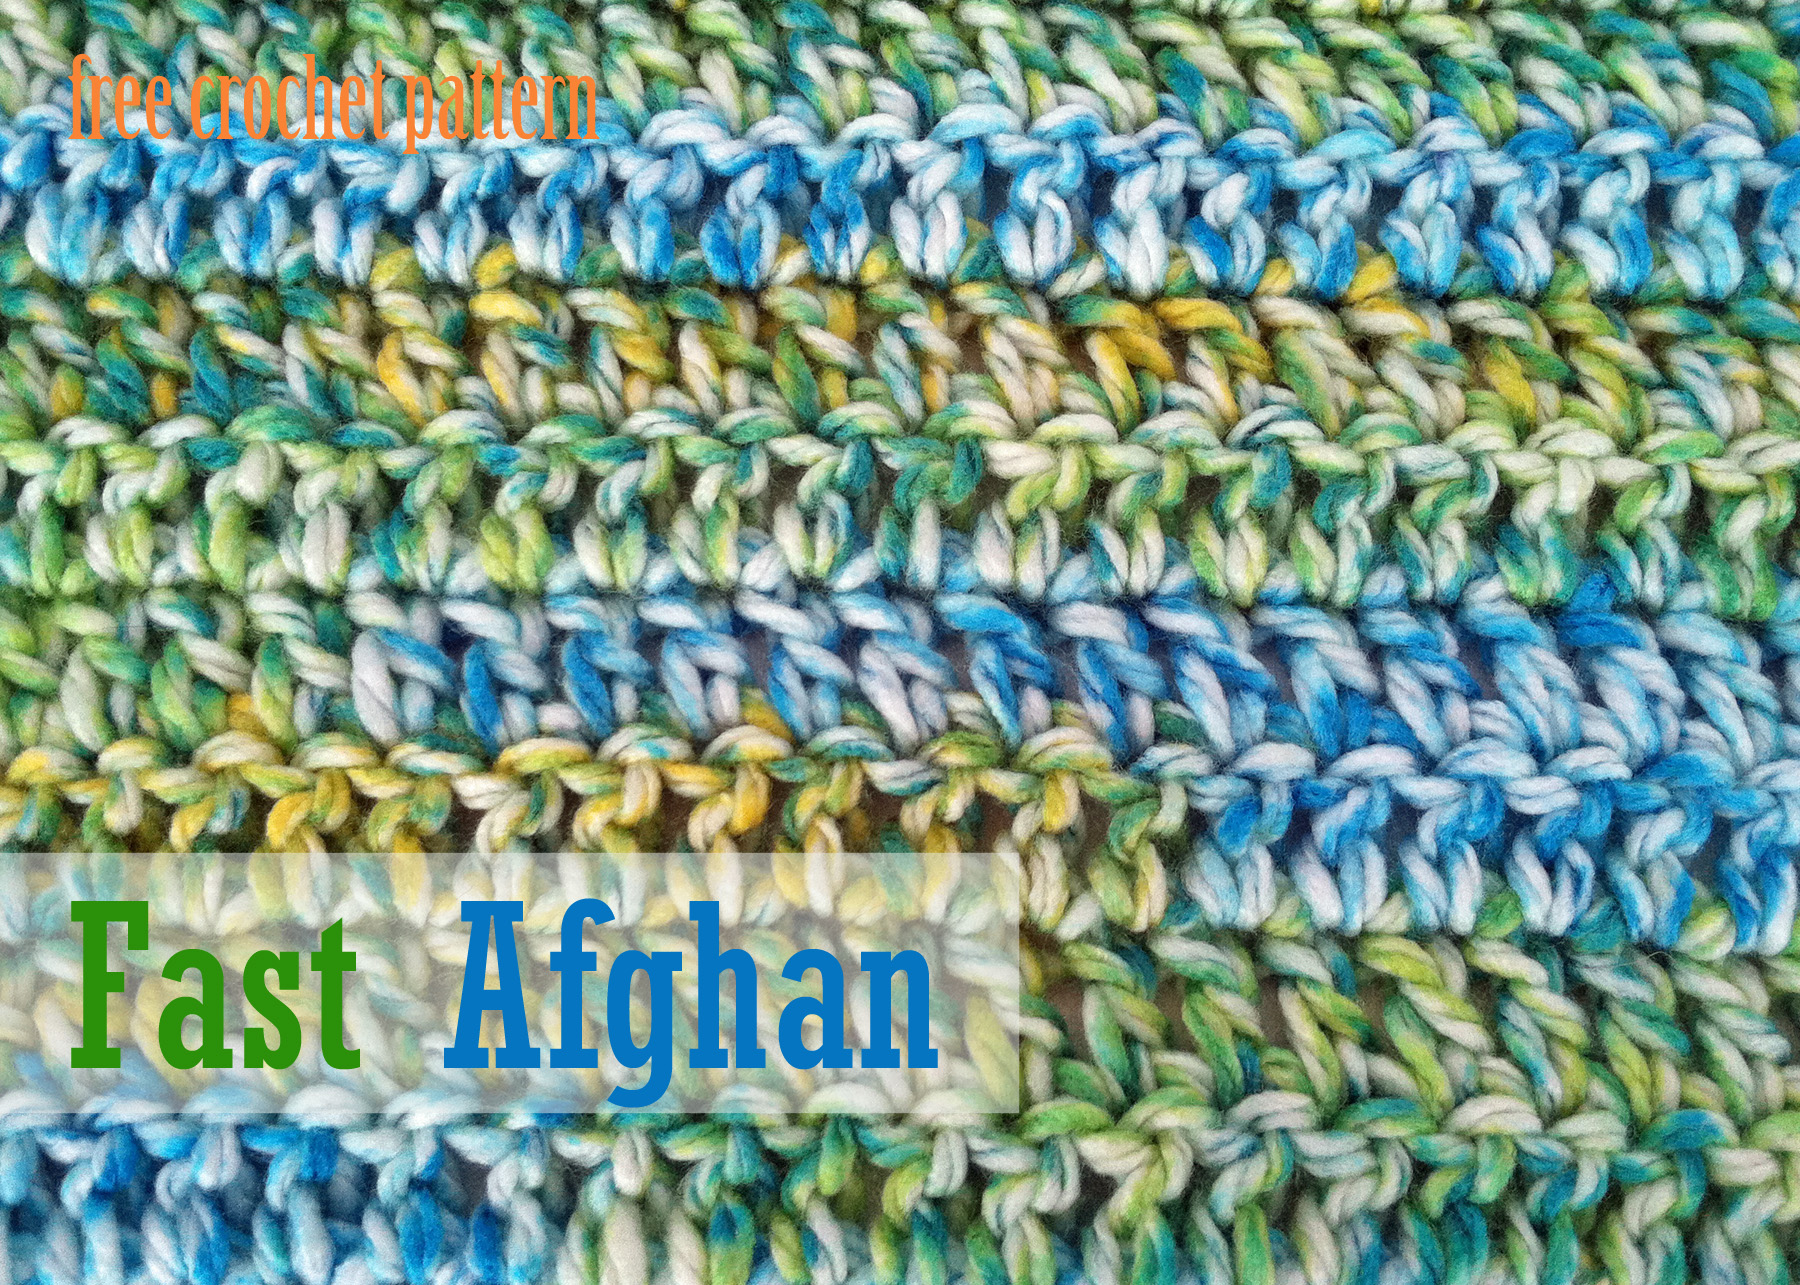 Free Crochet Afghan Pattern Free Crochet Pattern Fast Afghan